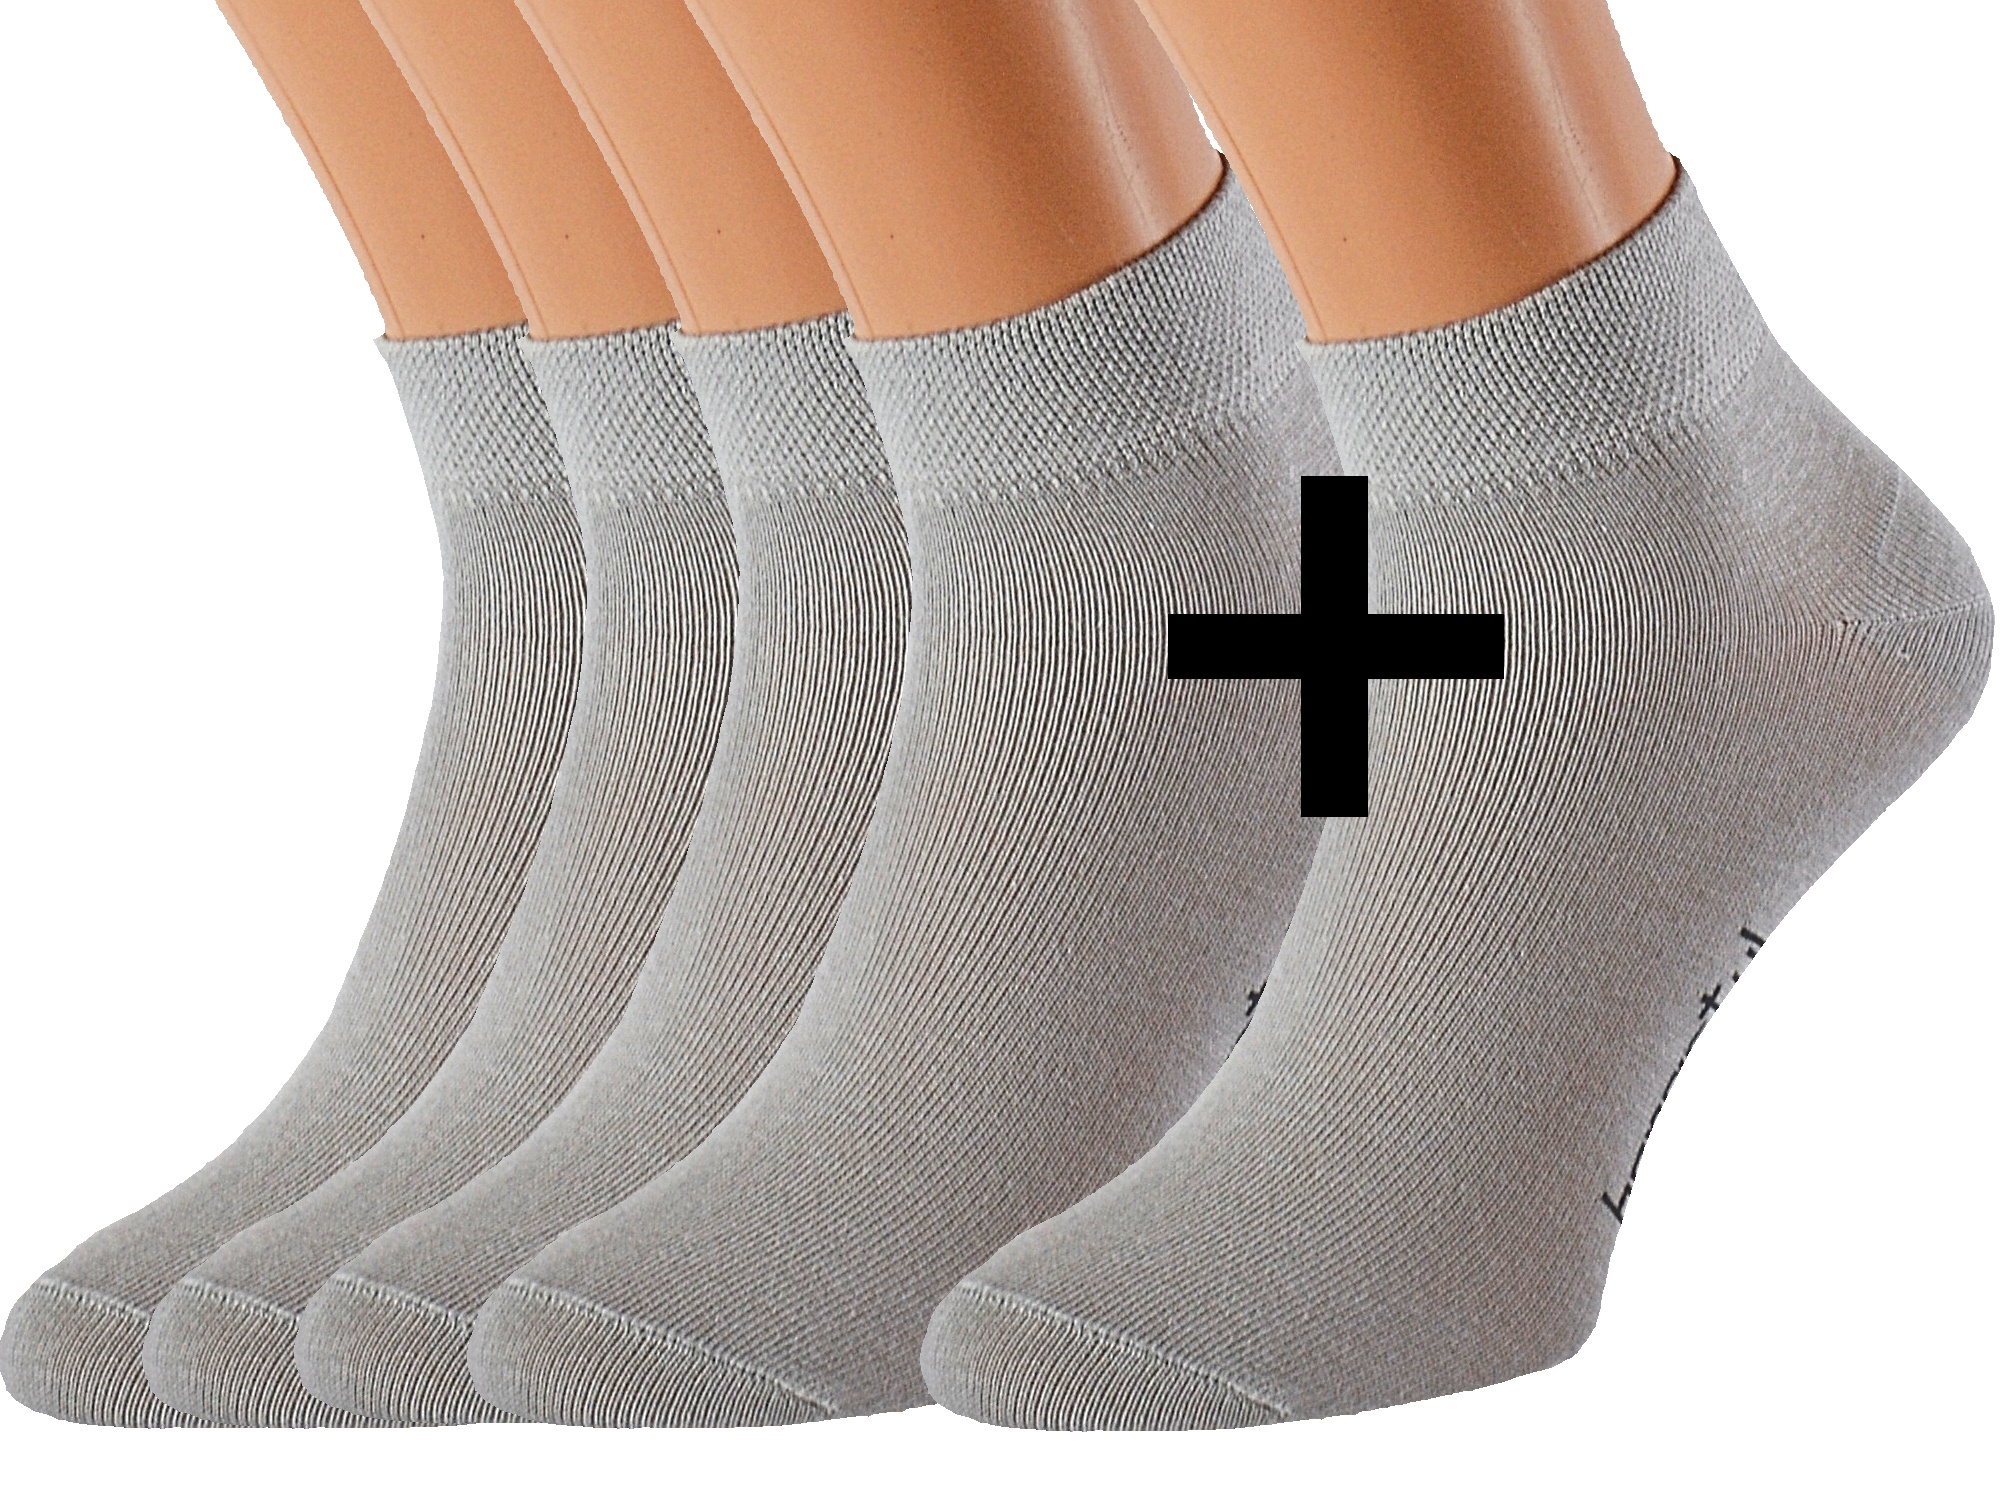 Bavlněné ponožky OBI 5 párů KUKS Barva: Světle šedé, Velikost: EUR 38-41 (UK 5-7)